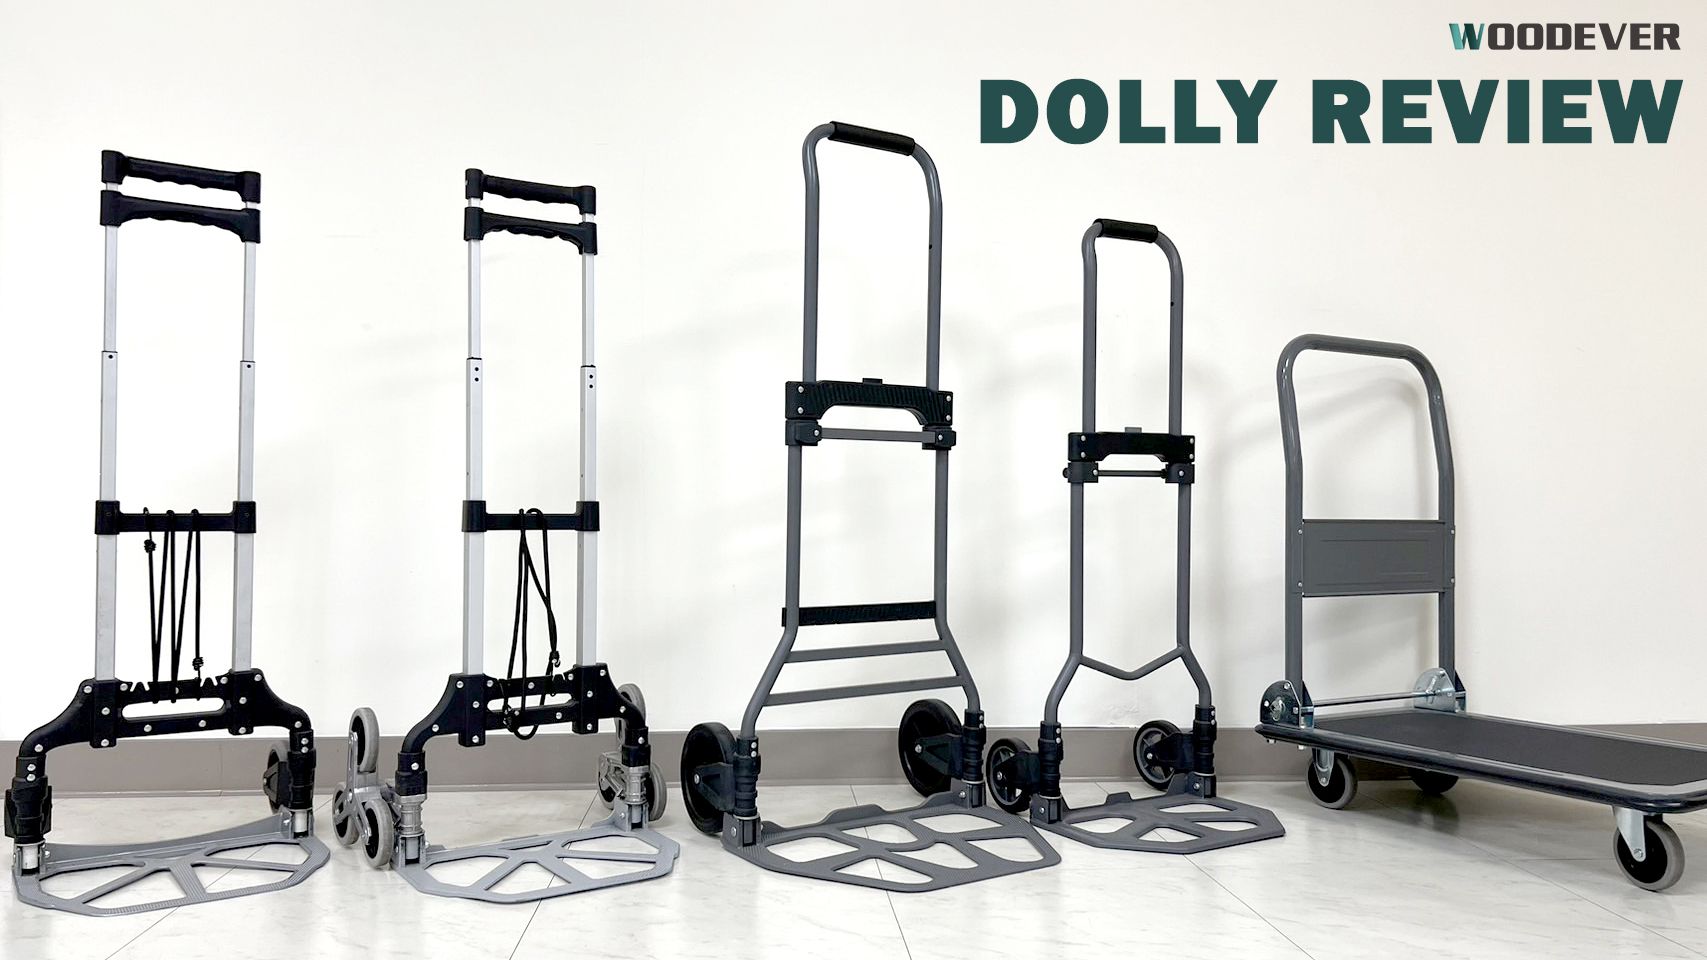 Top 5 zusammenklappbare Dolly-Wagen für den persönlichen Gebrauch, hergestellt aus strapazierfähigem Stahl und Aluminium und zu Fabrikpreisen von WOODEVER angeboten.